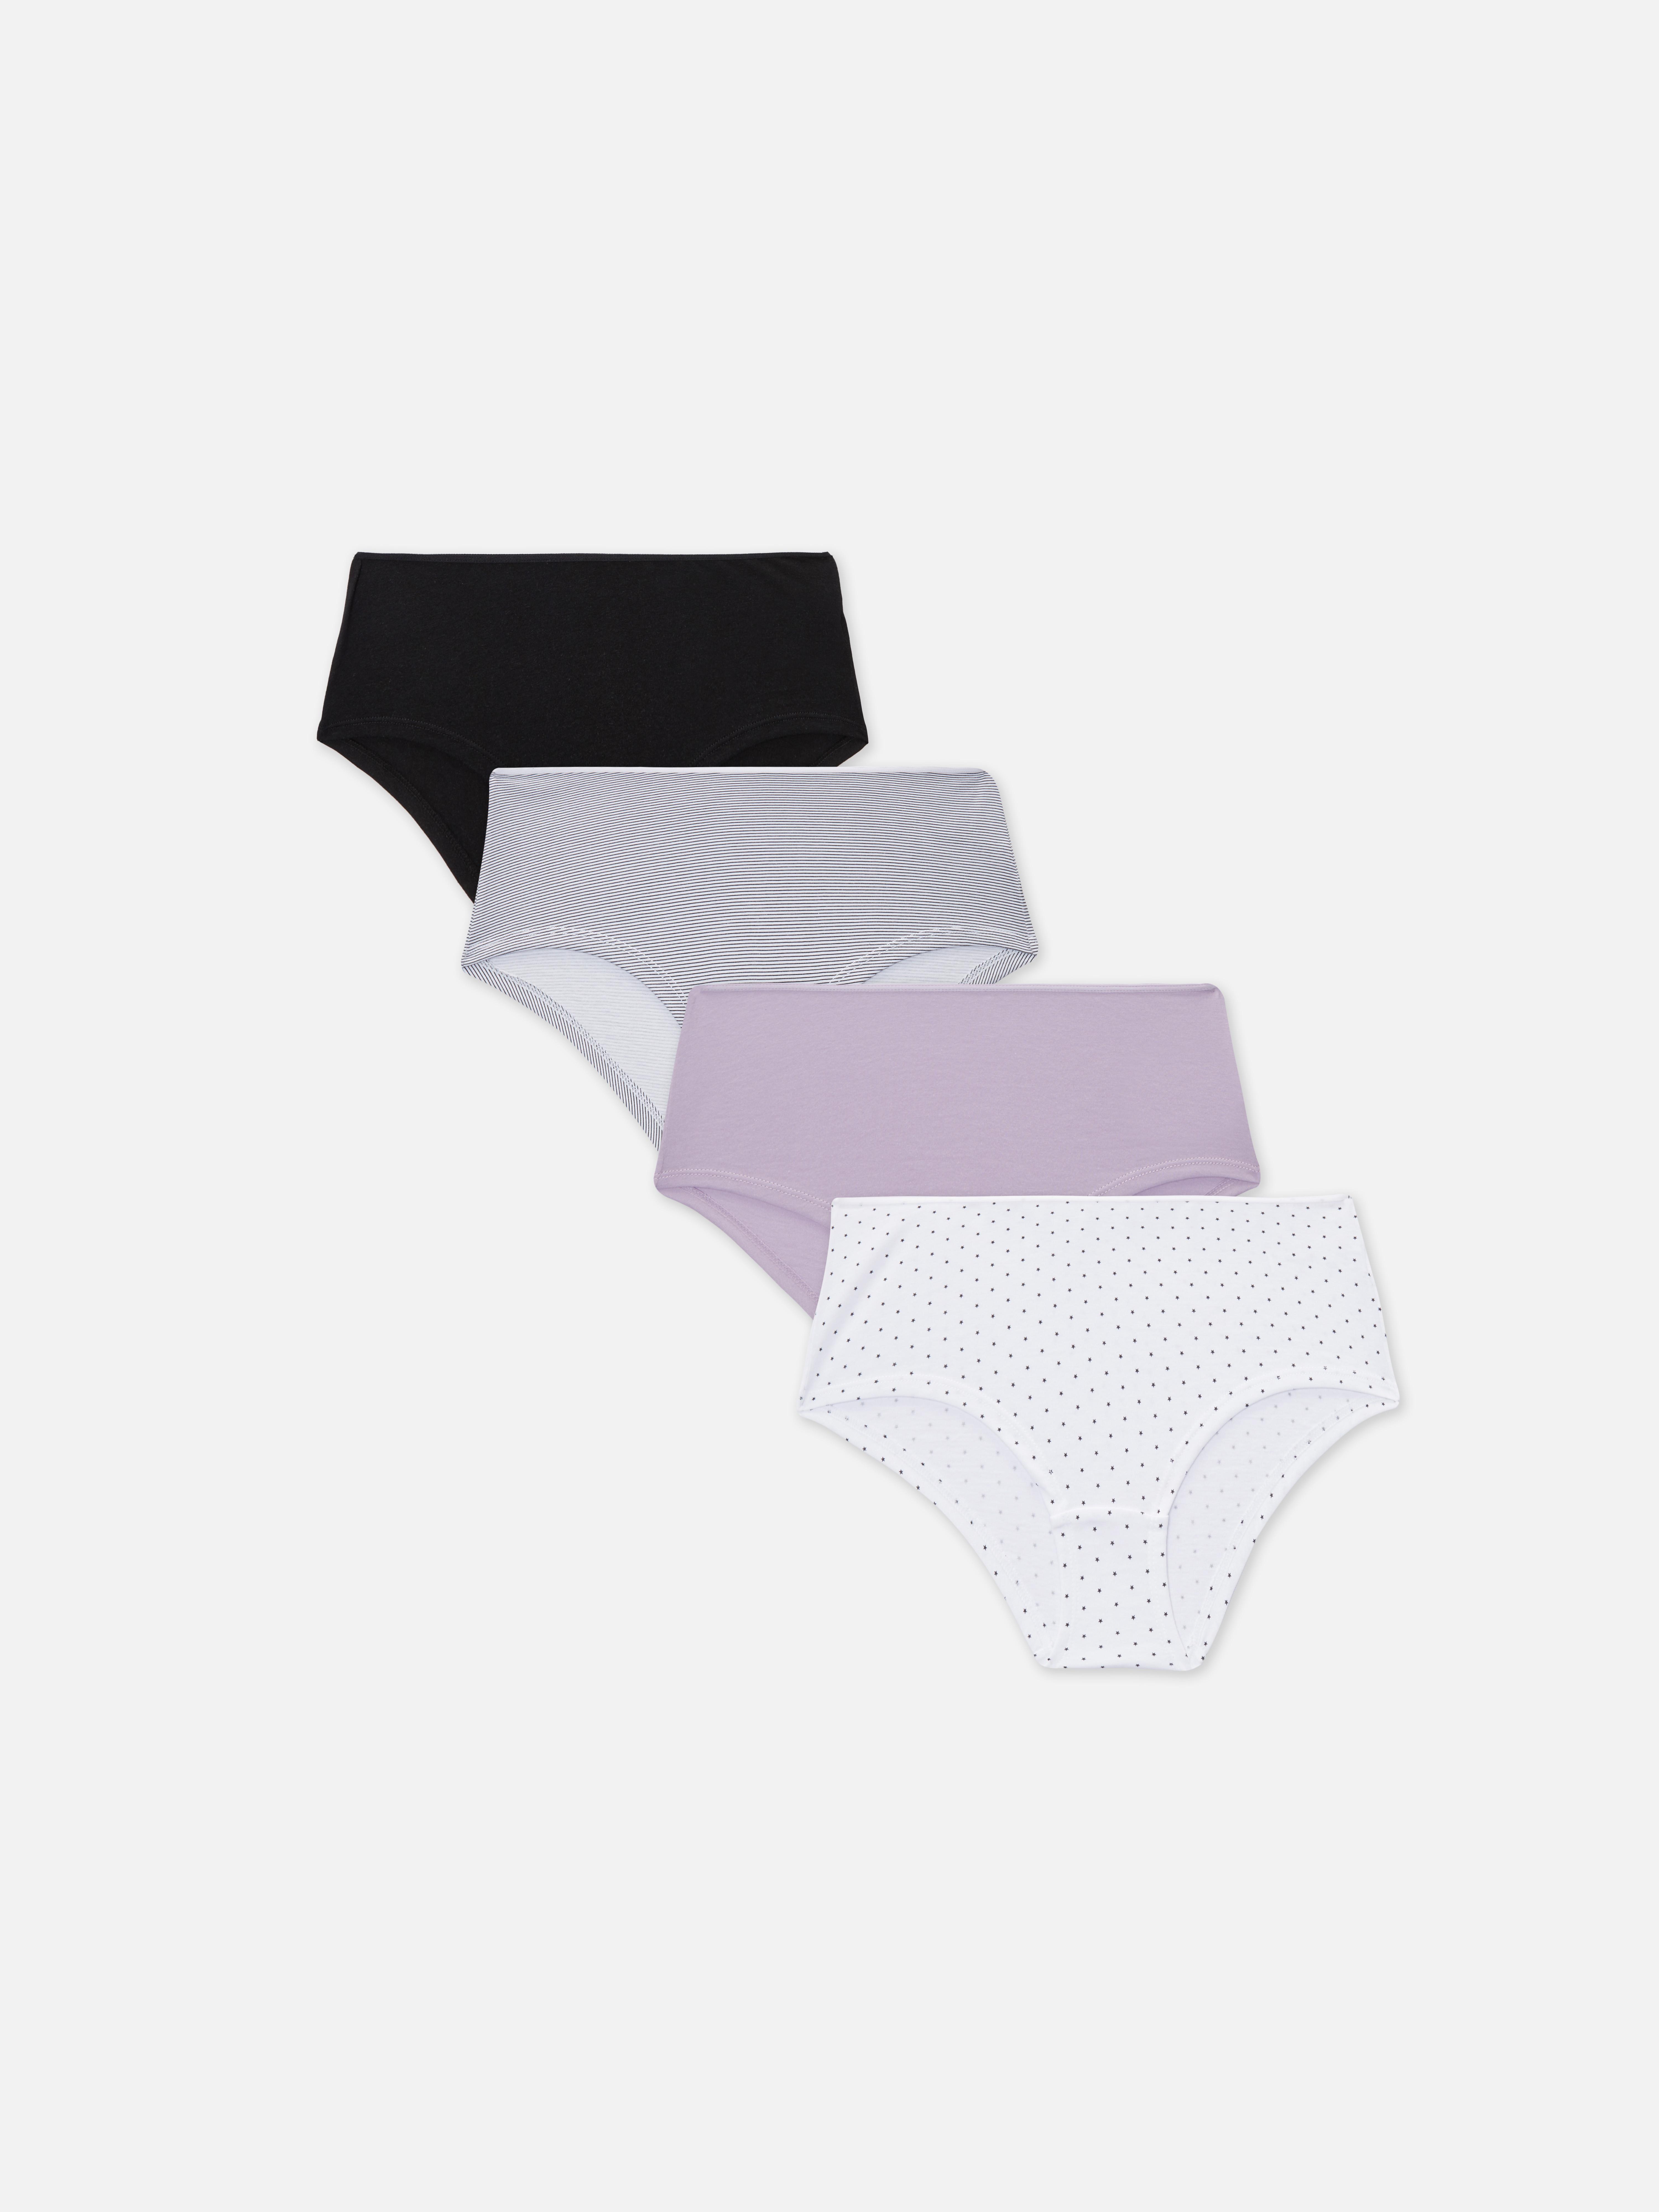 Our favourite £6 @Primark underwear sets 🙌#primark